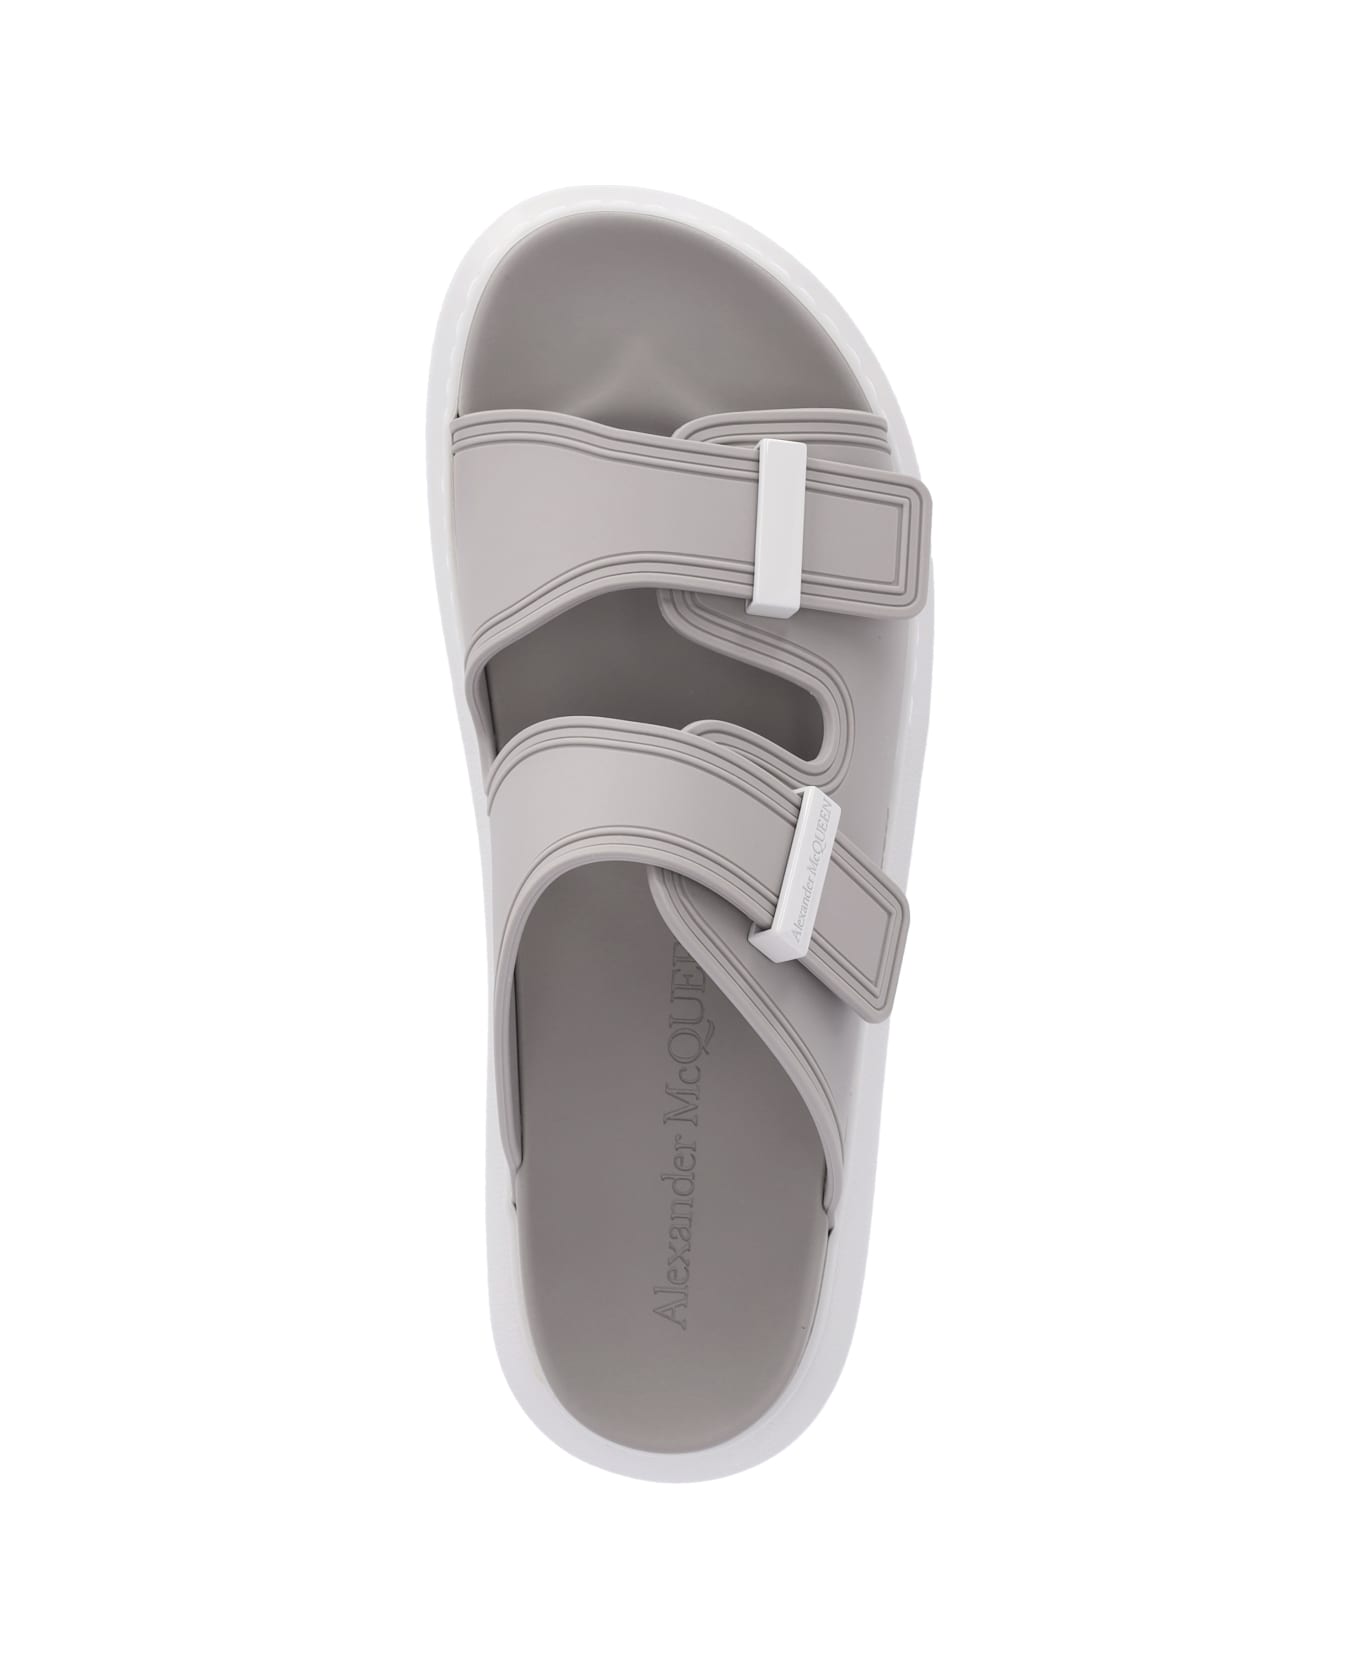 Alexander McQueen 'hybrid' Slide Sandals - Stone vanilla